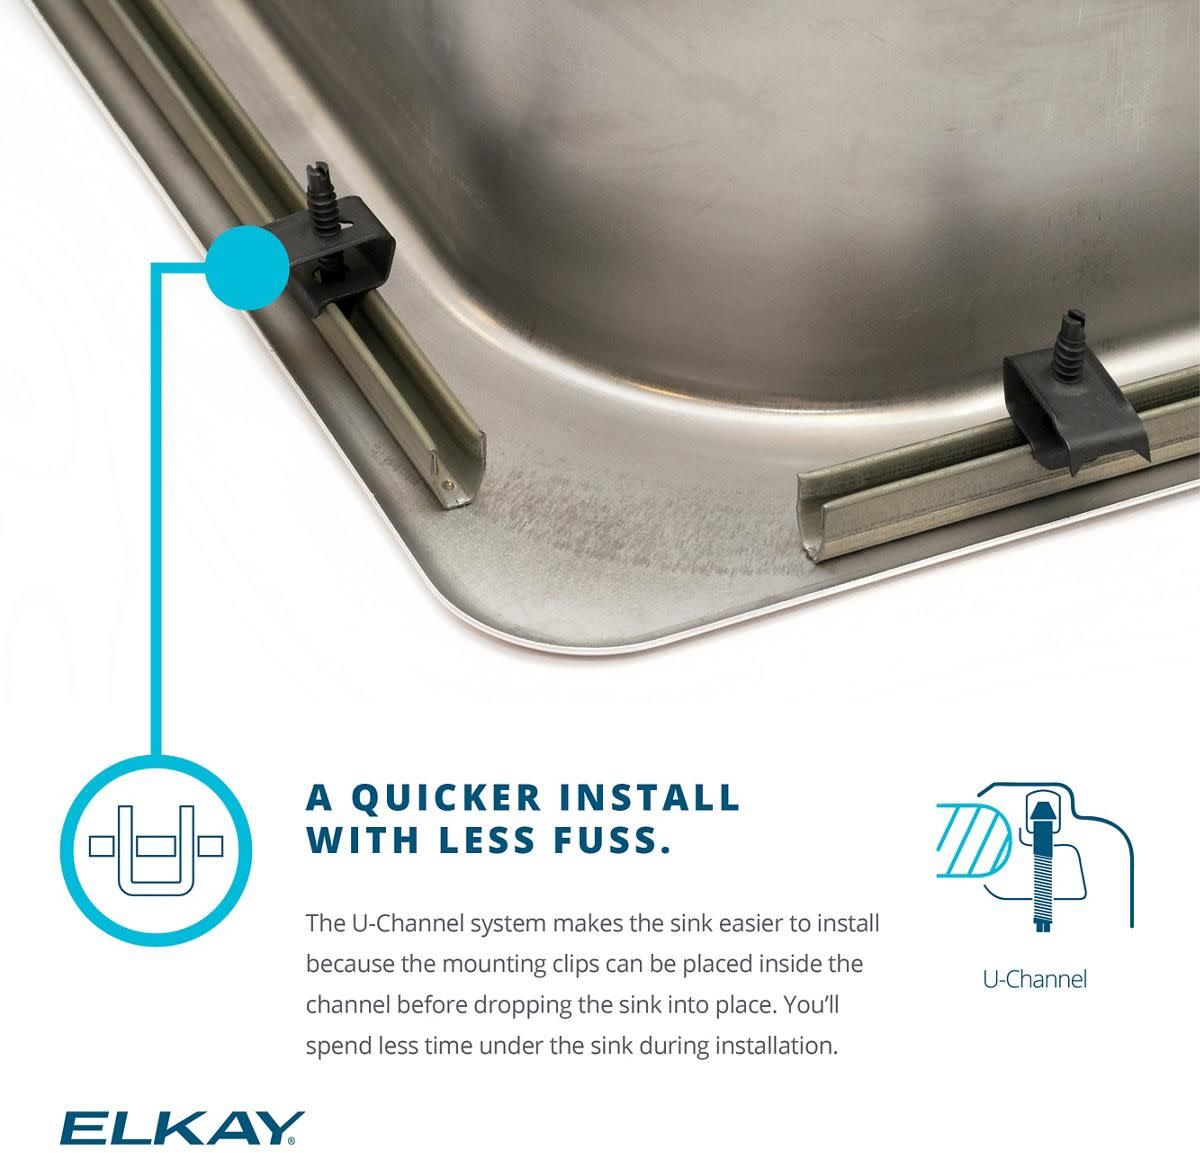 Elkay Drkr2517 Lustertone 25" Drop In Single Basin Stainless Steel Utility Sink - 4 Faucet - image 3 of 7